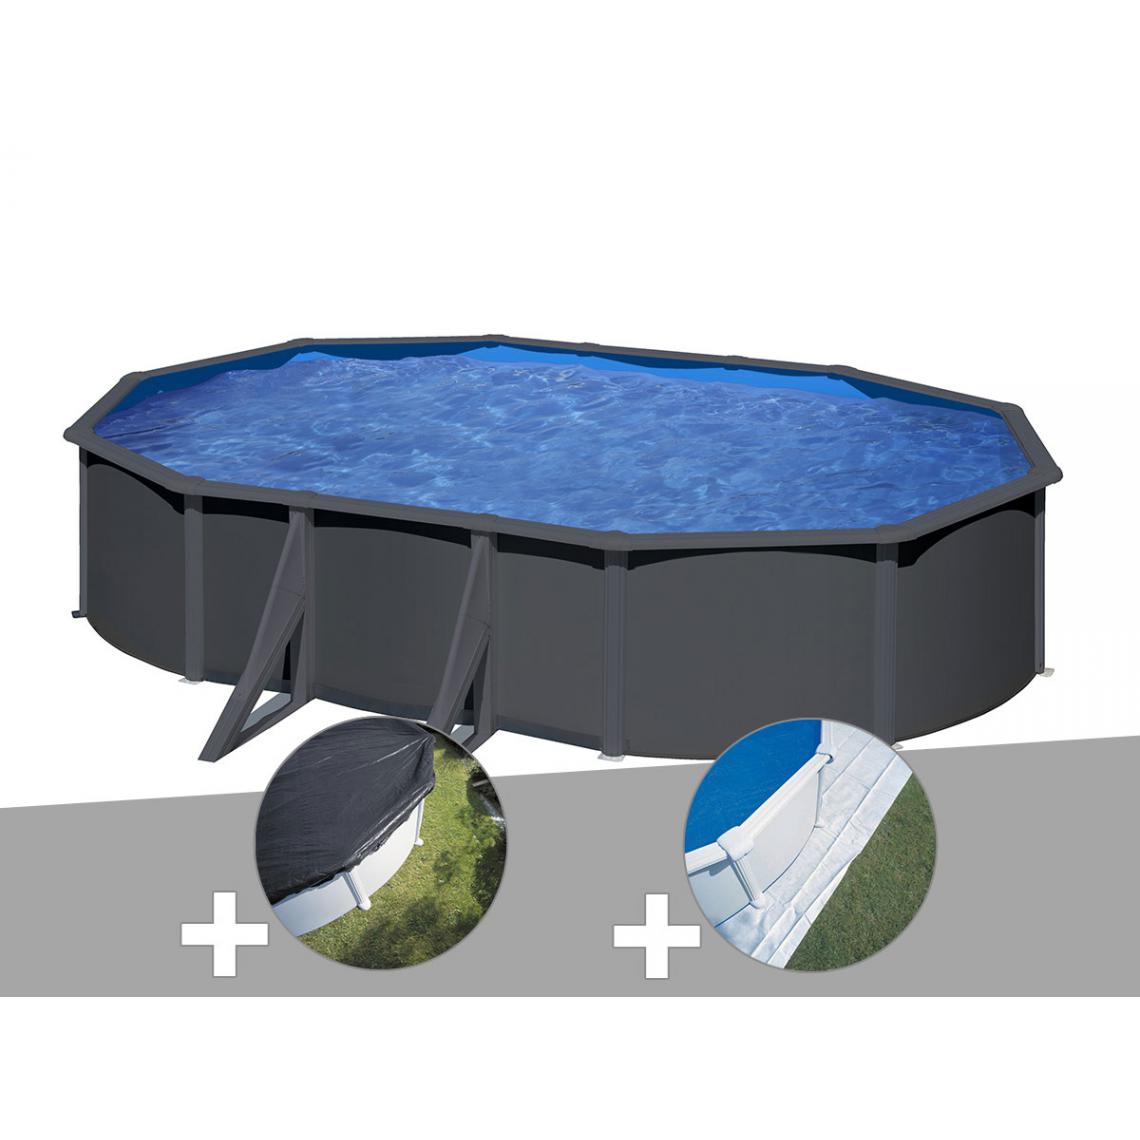 Gre - Kit piscine acier gris anthracite Gré Louko ovale 6,34 x 3,99 x 1,22 m + Bâche d'hivernage + Tapis de sol - Piscines acier et résine